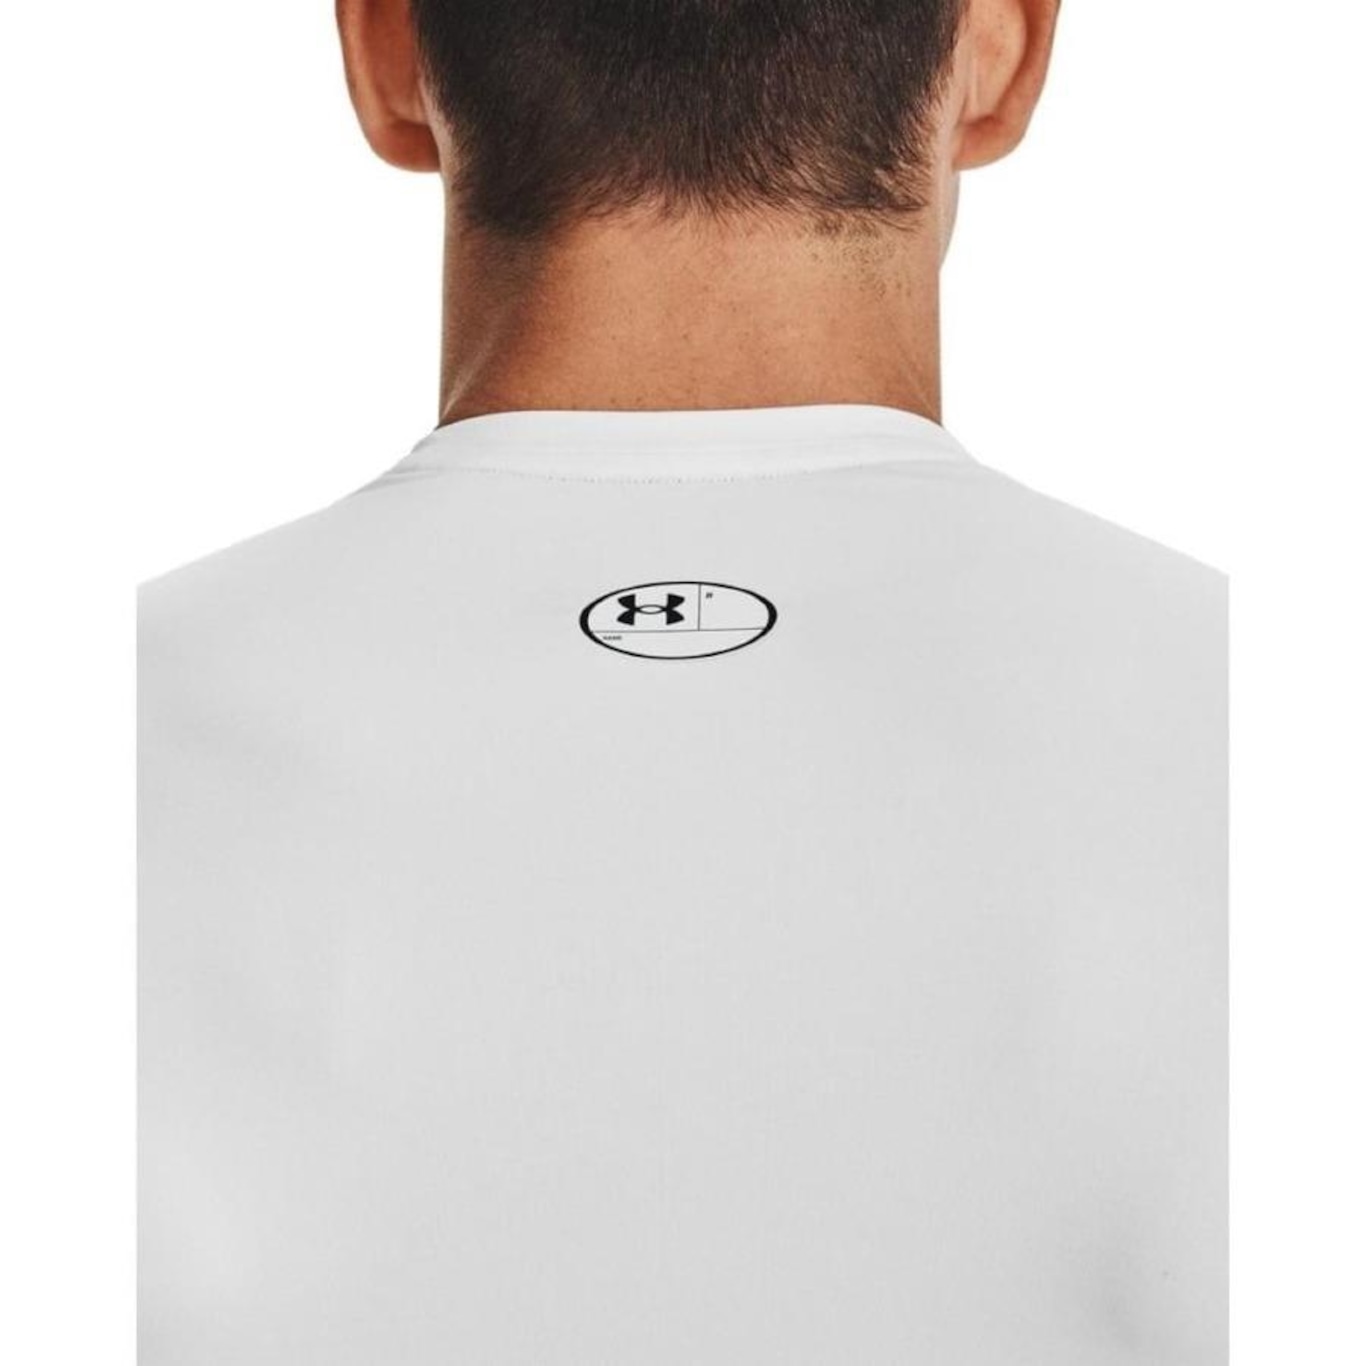 Camiseta de Compressão Under Armour Heatgear Armour - Masculina